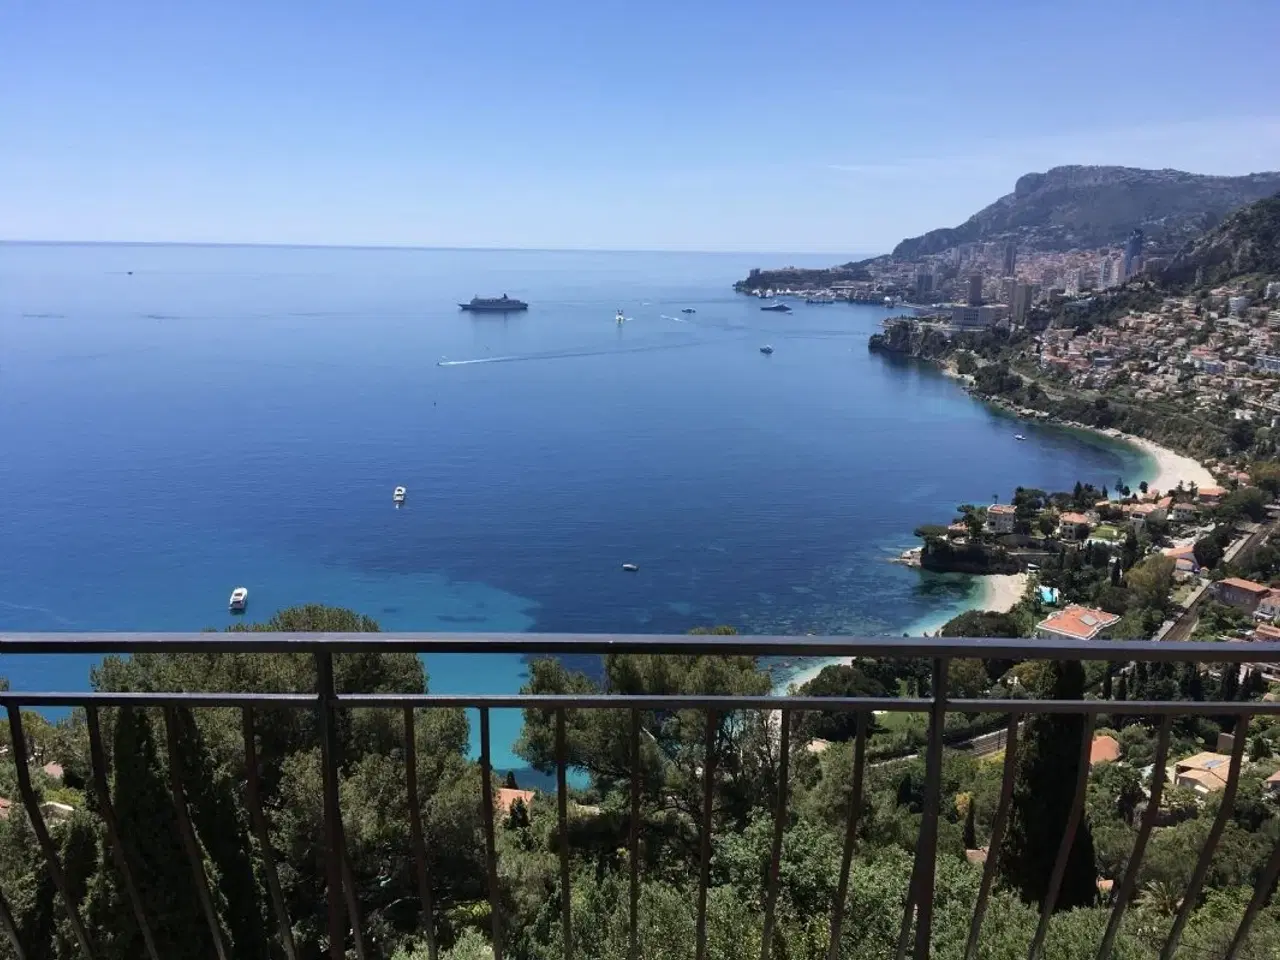 Billede 1 - Ferielejlighed i Roquebrune Cap Martin med storslået udsigt over Middelhavet, strand og Monaco